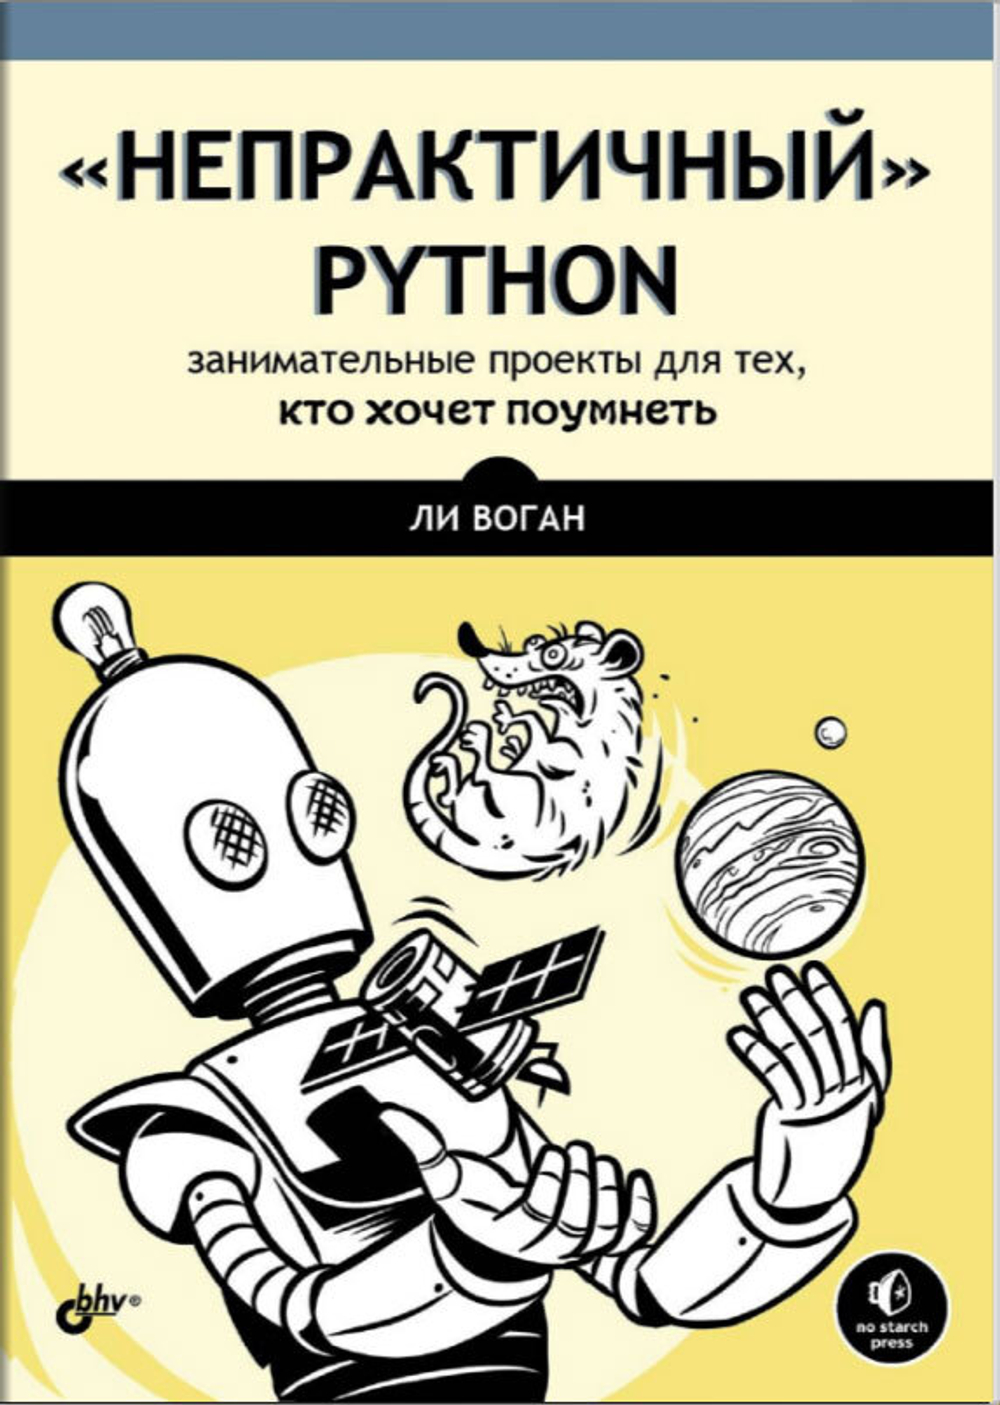 Книга: Ли В. "“Непрактичный” Python: занимательные проекты для тех, кто хочет поумнеть"